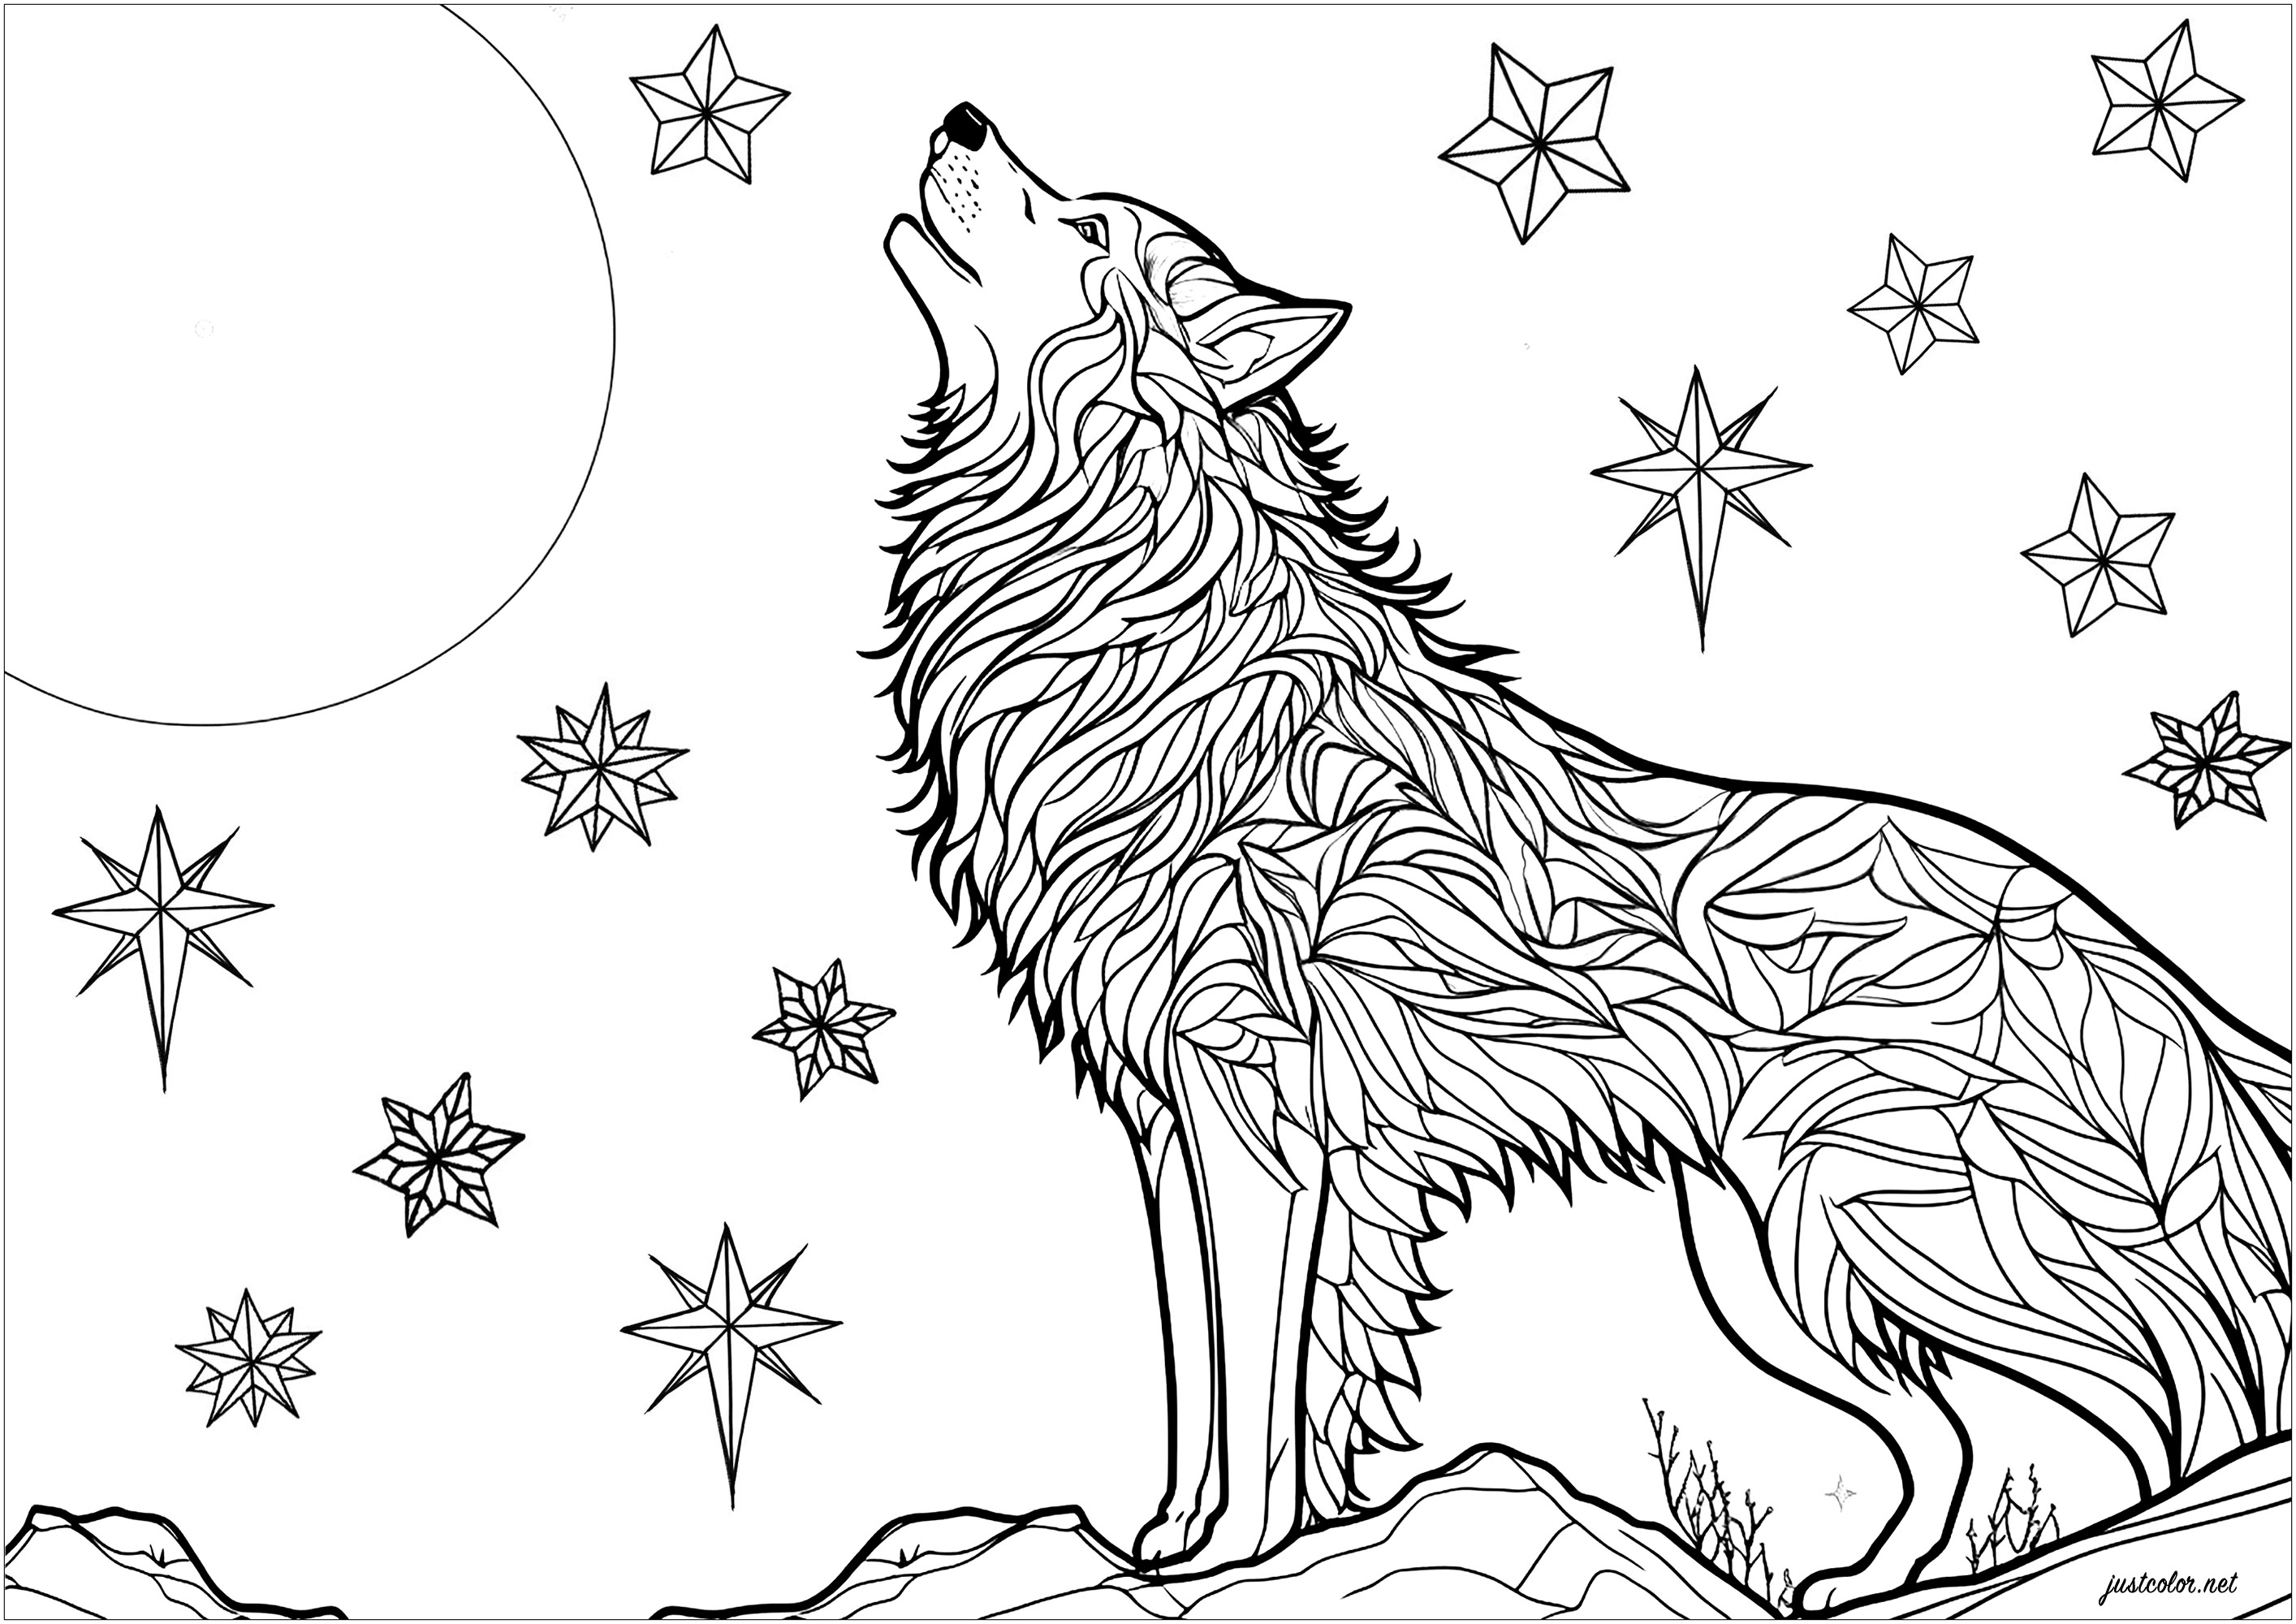 Das Heulen eines Wolfes im Mondlicht malen. Wunderschöne Szene mit einem Wolf, der nachts heult und sich auf einem Felsen ausruht. Am Nachthimmel sind glitzernde Sterne zu sehen. Die Fellmuster des Wolfs können unabhängig voneinander gefärbt werden, um ein Ergebnis voller Geheimnisse und Magie zu erzielen.